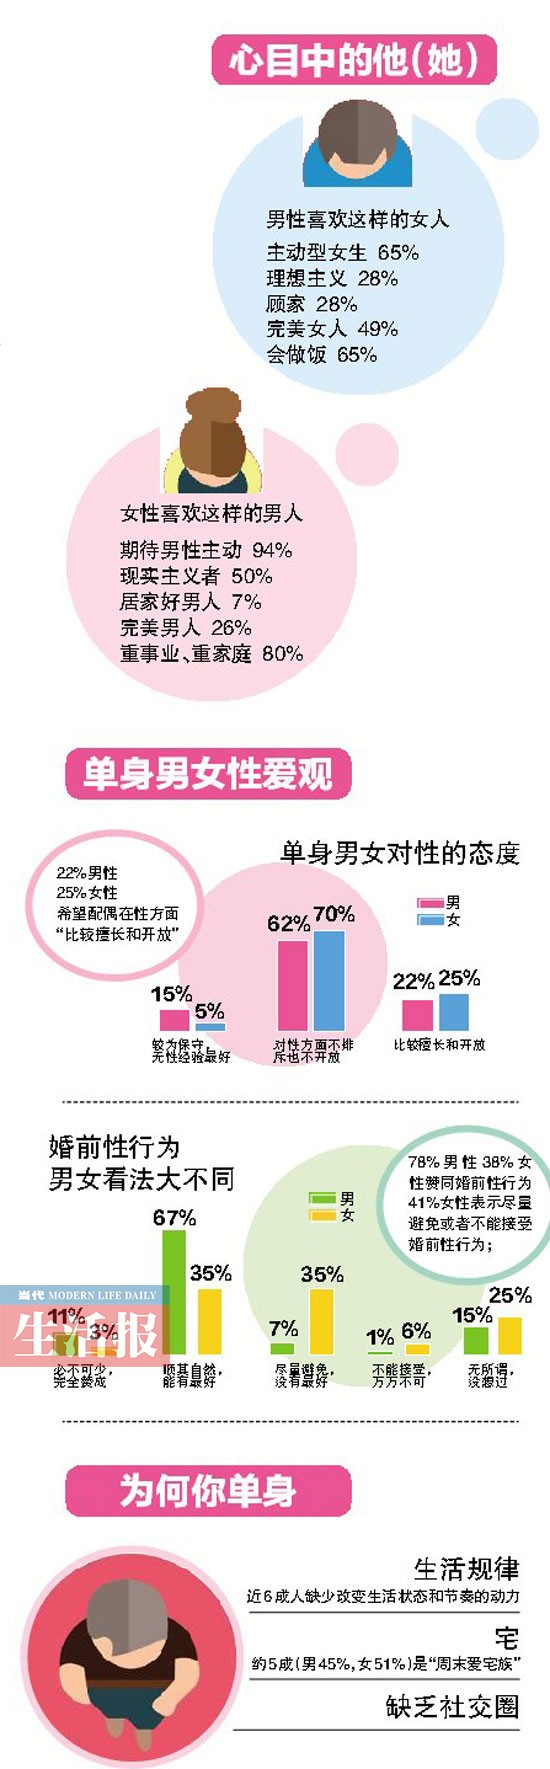 中国男女婚恋观调查报告:70后很奔放90后更加保守